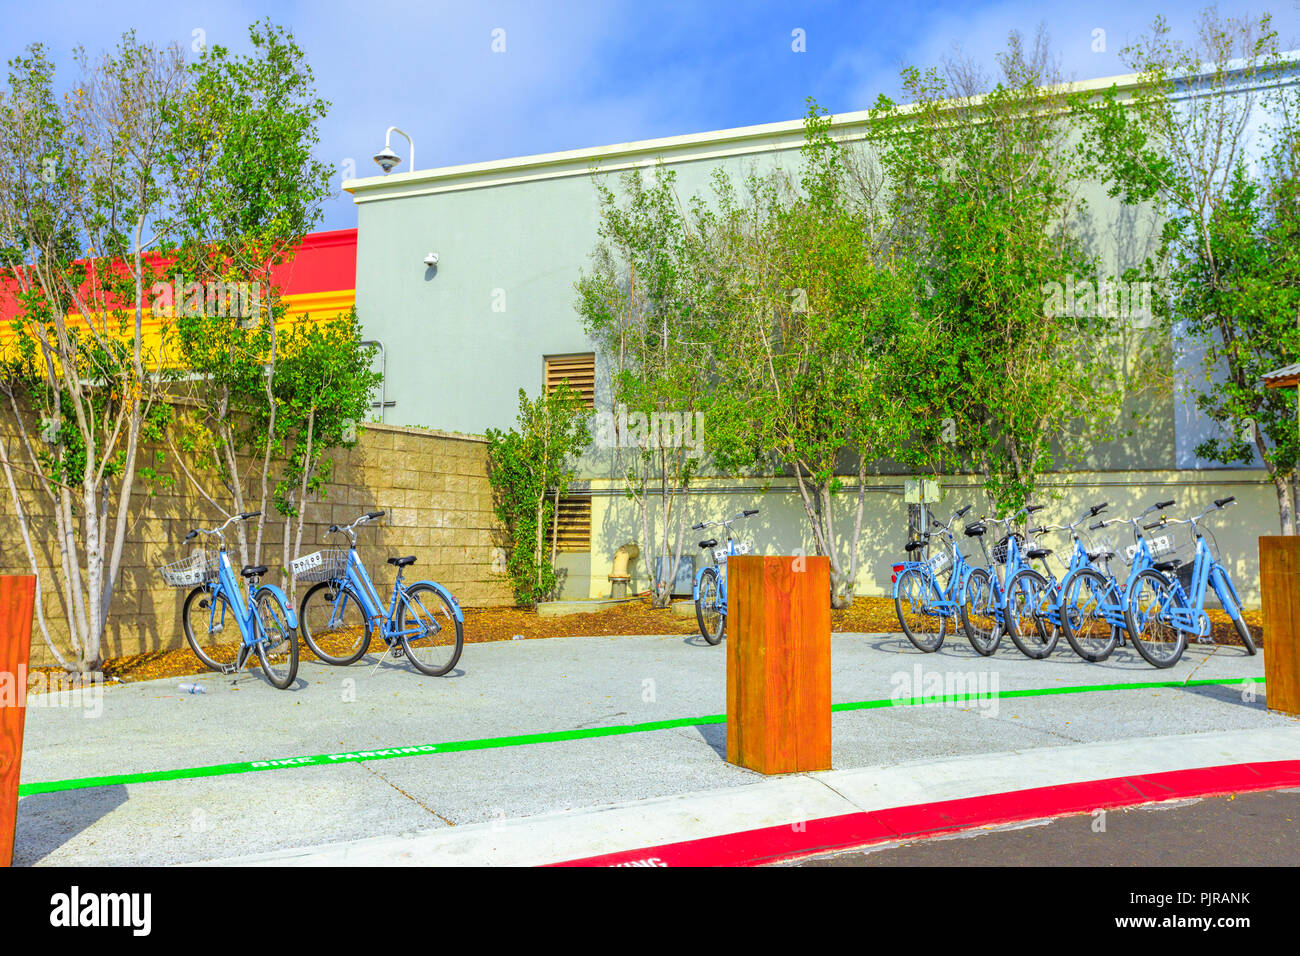 Menlo Park, Kalifornien, USA - 13. August 2018: Fahrräder durch Facebook Mitarbeitern verwendet werden, Ihren Campus zu navigieren. Farbenfrohes Gebäude von Facebook Hauptsitz im Silicon Valley. Stockfoto